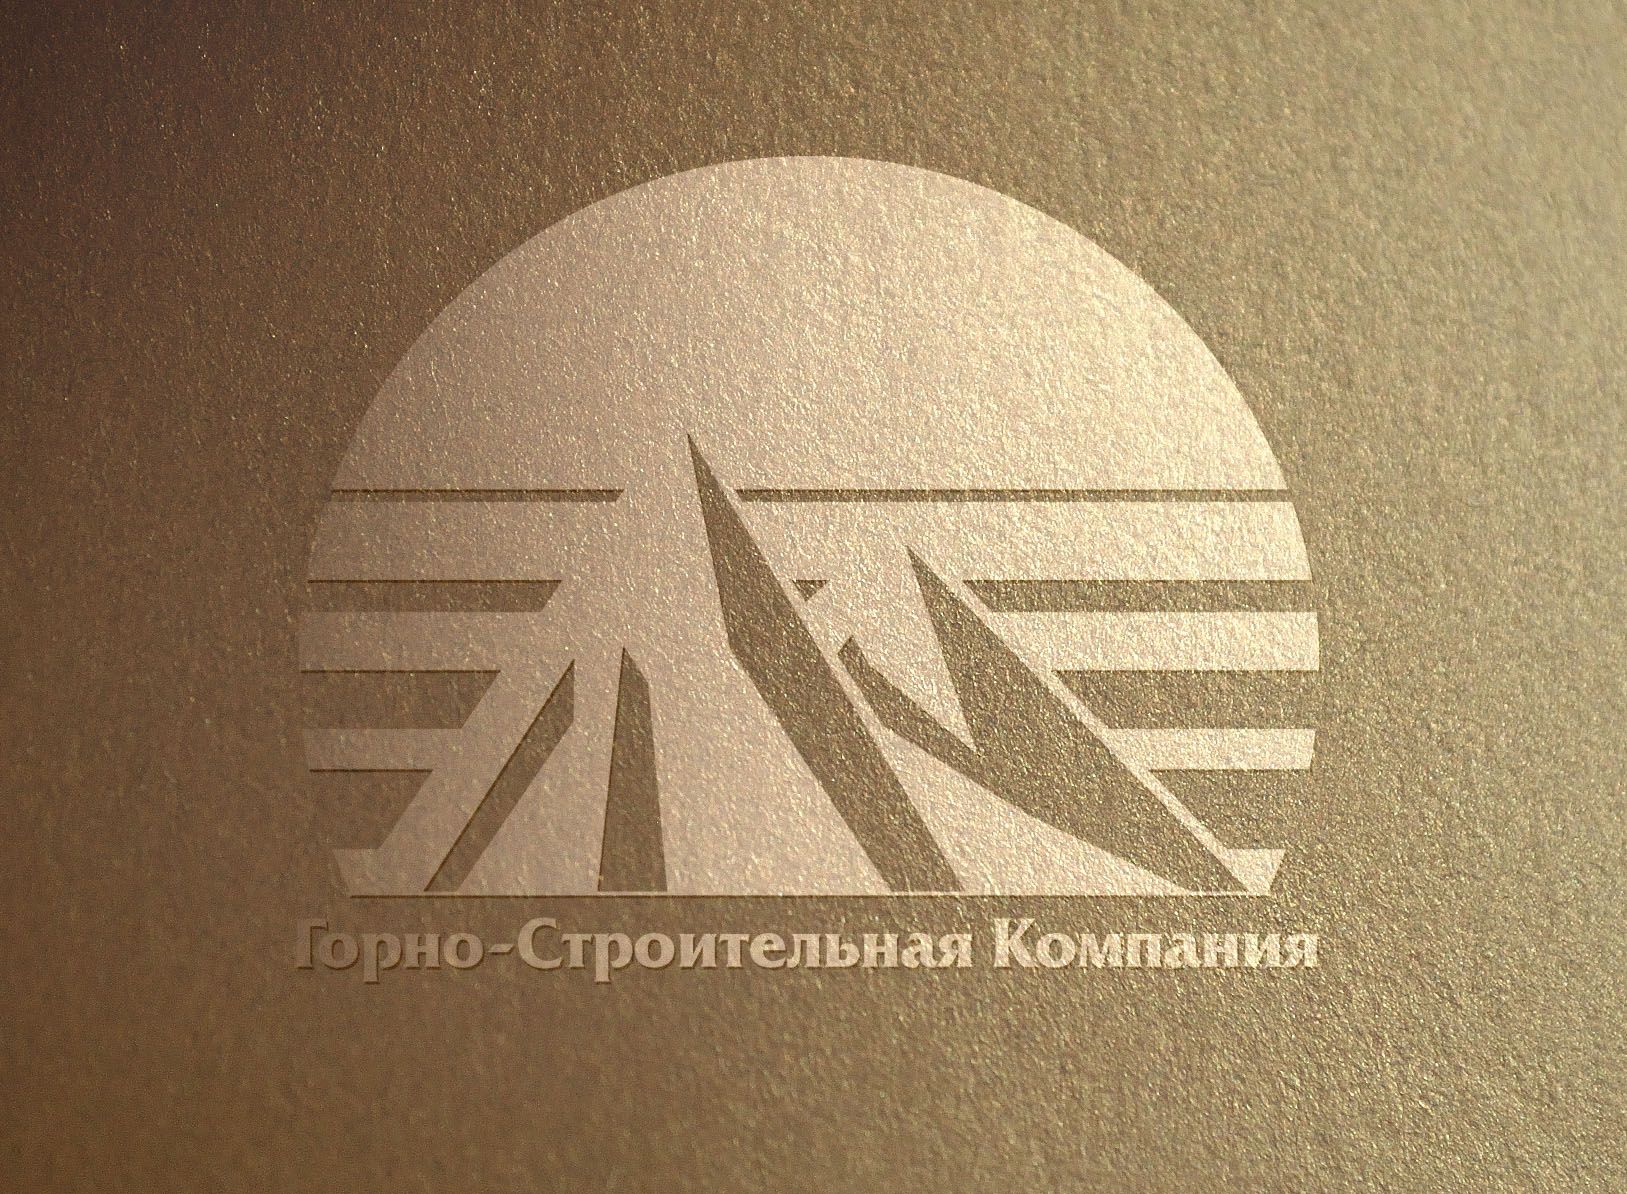 Логотип для Горно-Строительной Компании - дизайнер zhutol